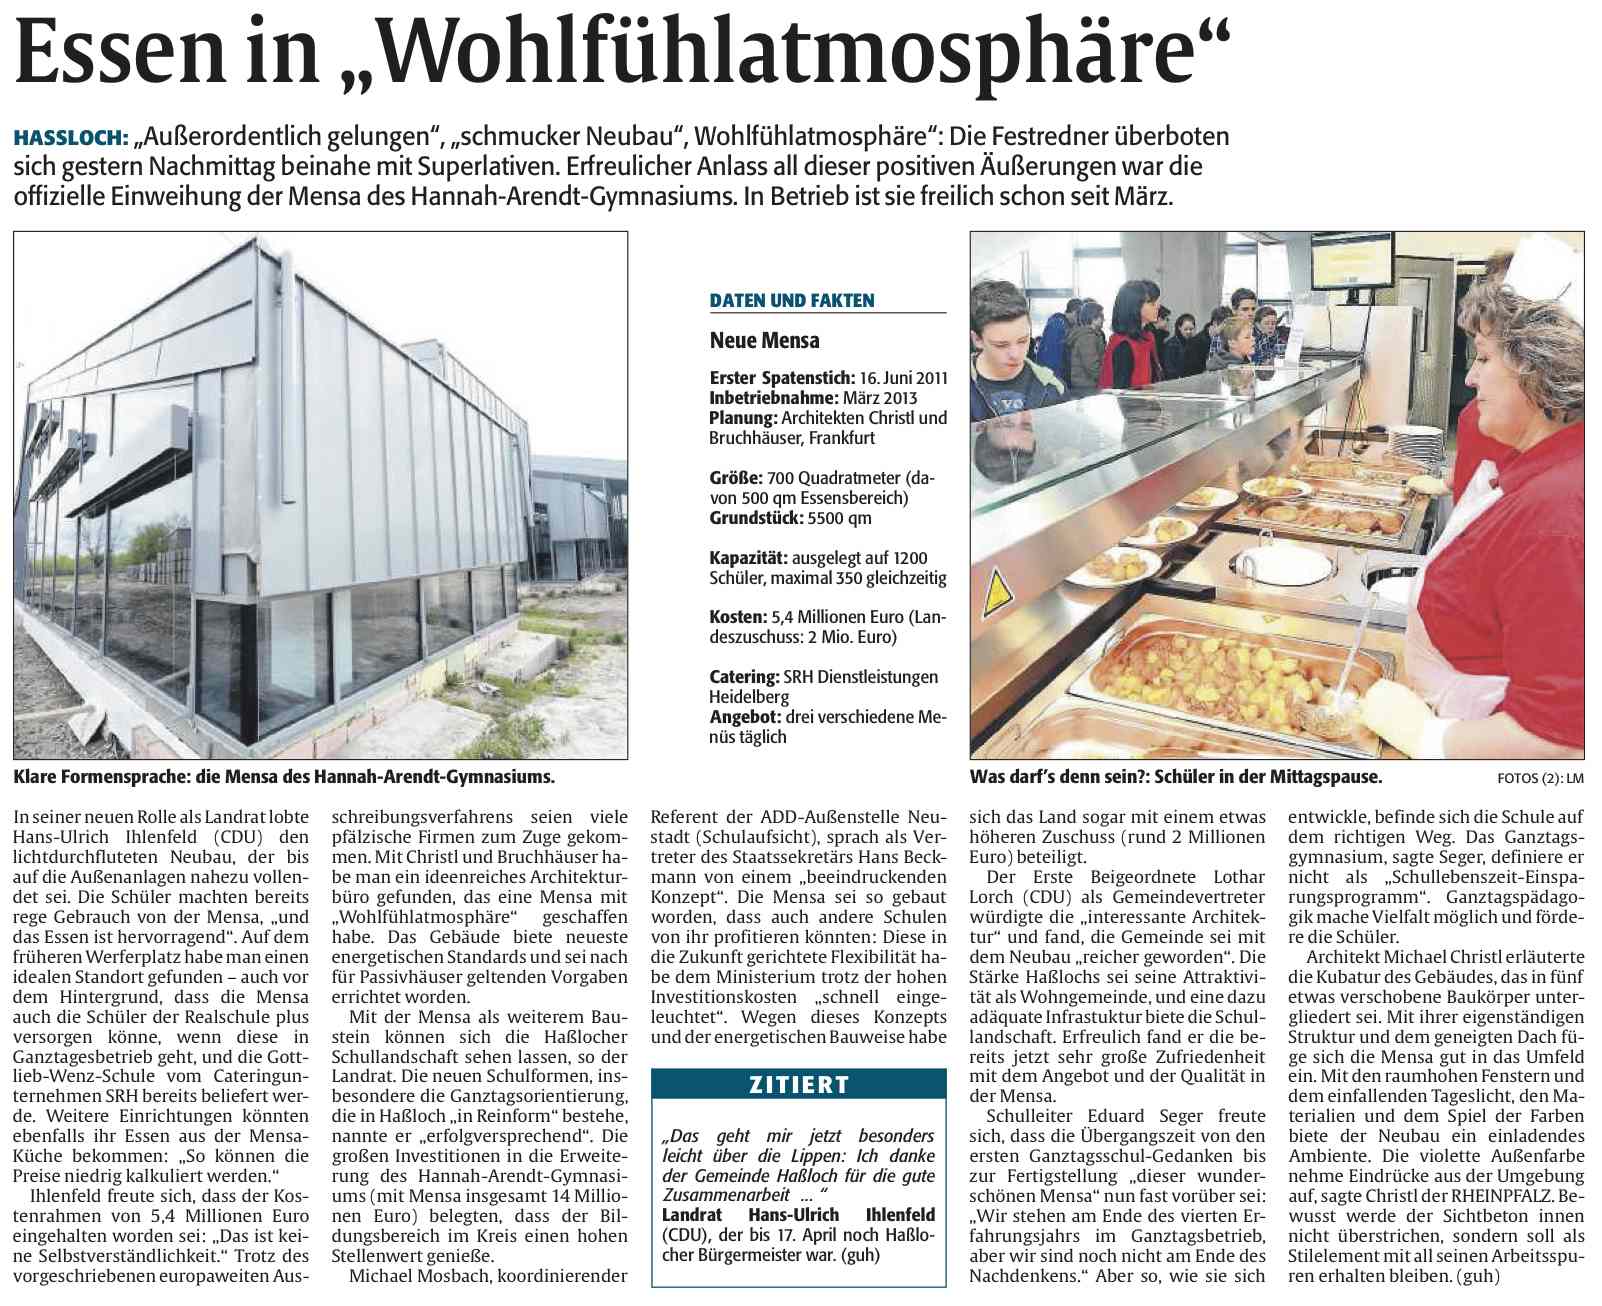 Die Rheinpfalz vom 14. April 2013 - Essen in Wohlfühlatmosphäre